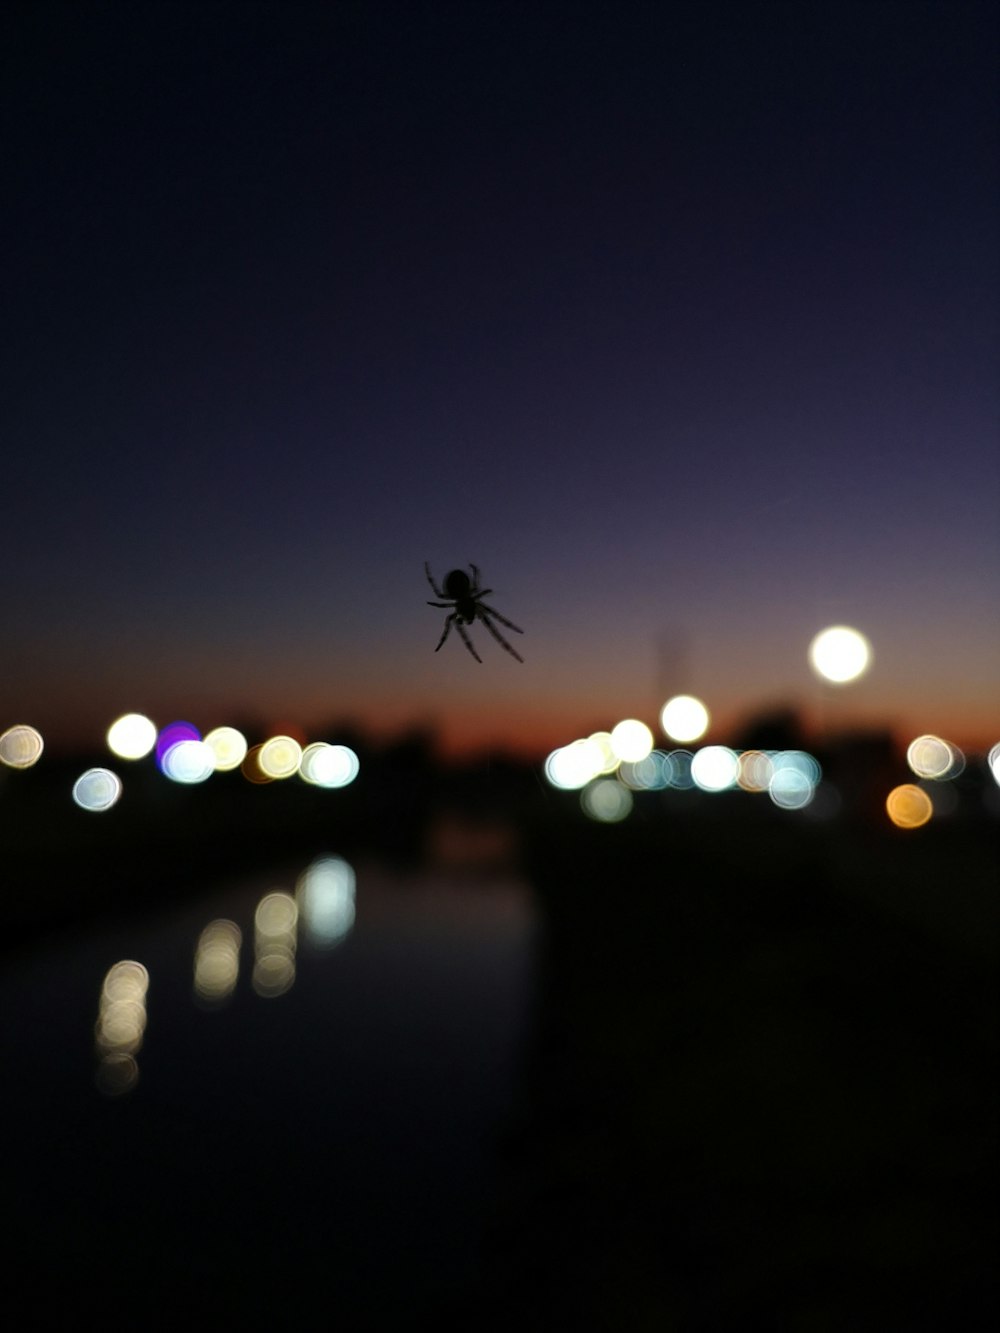 uma aranha pendurada na lateral de um prédio à noite